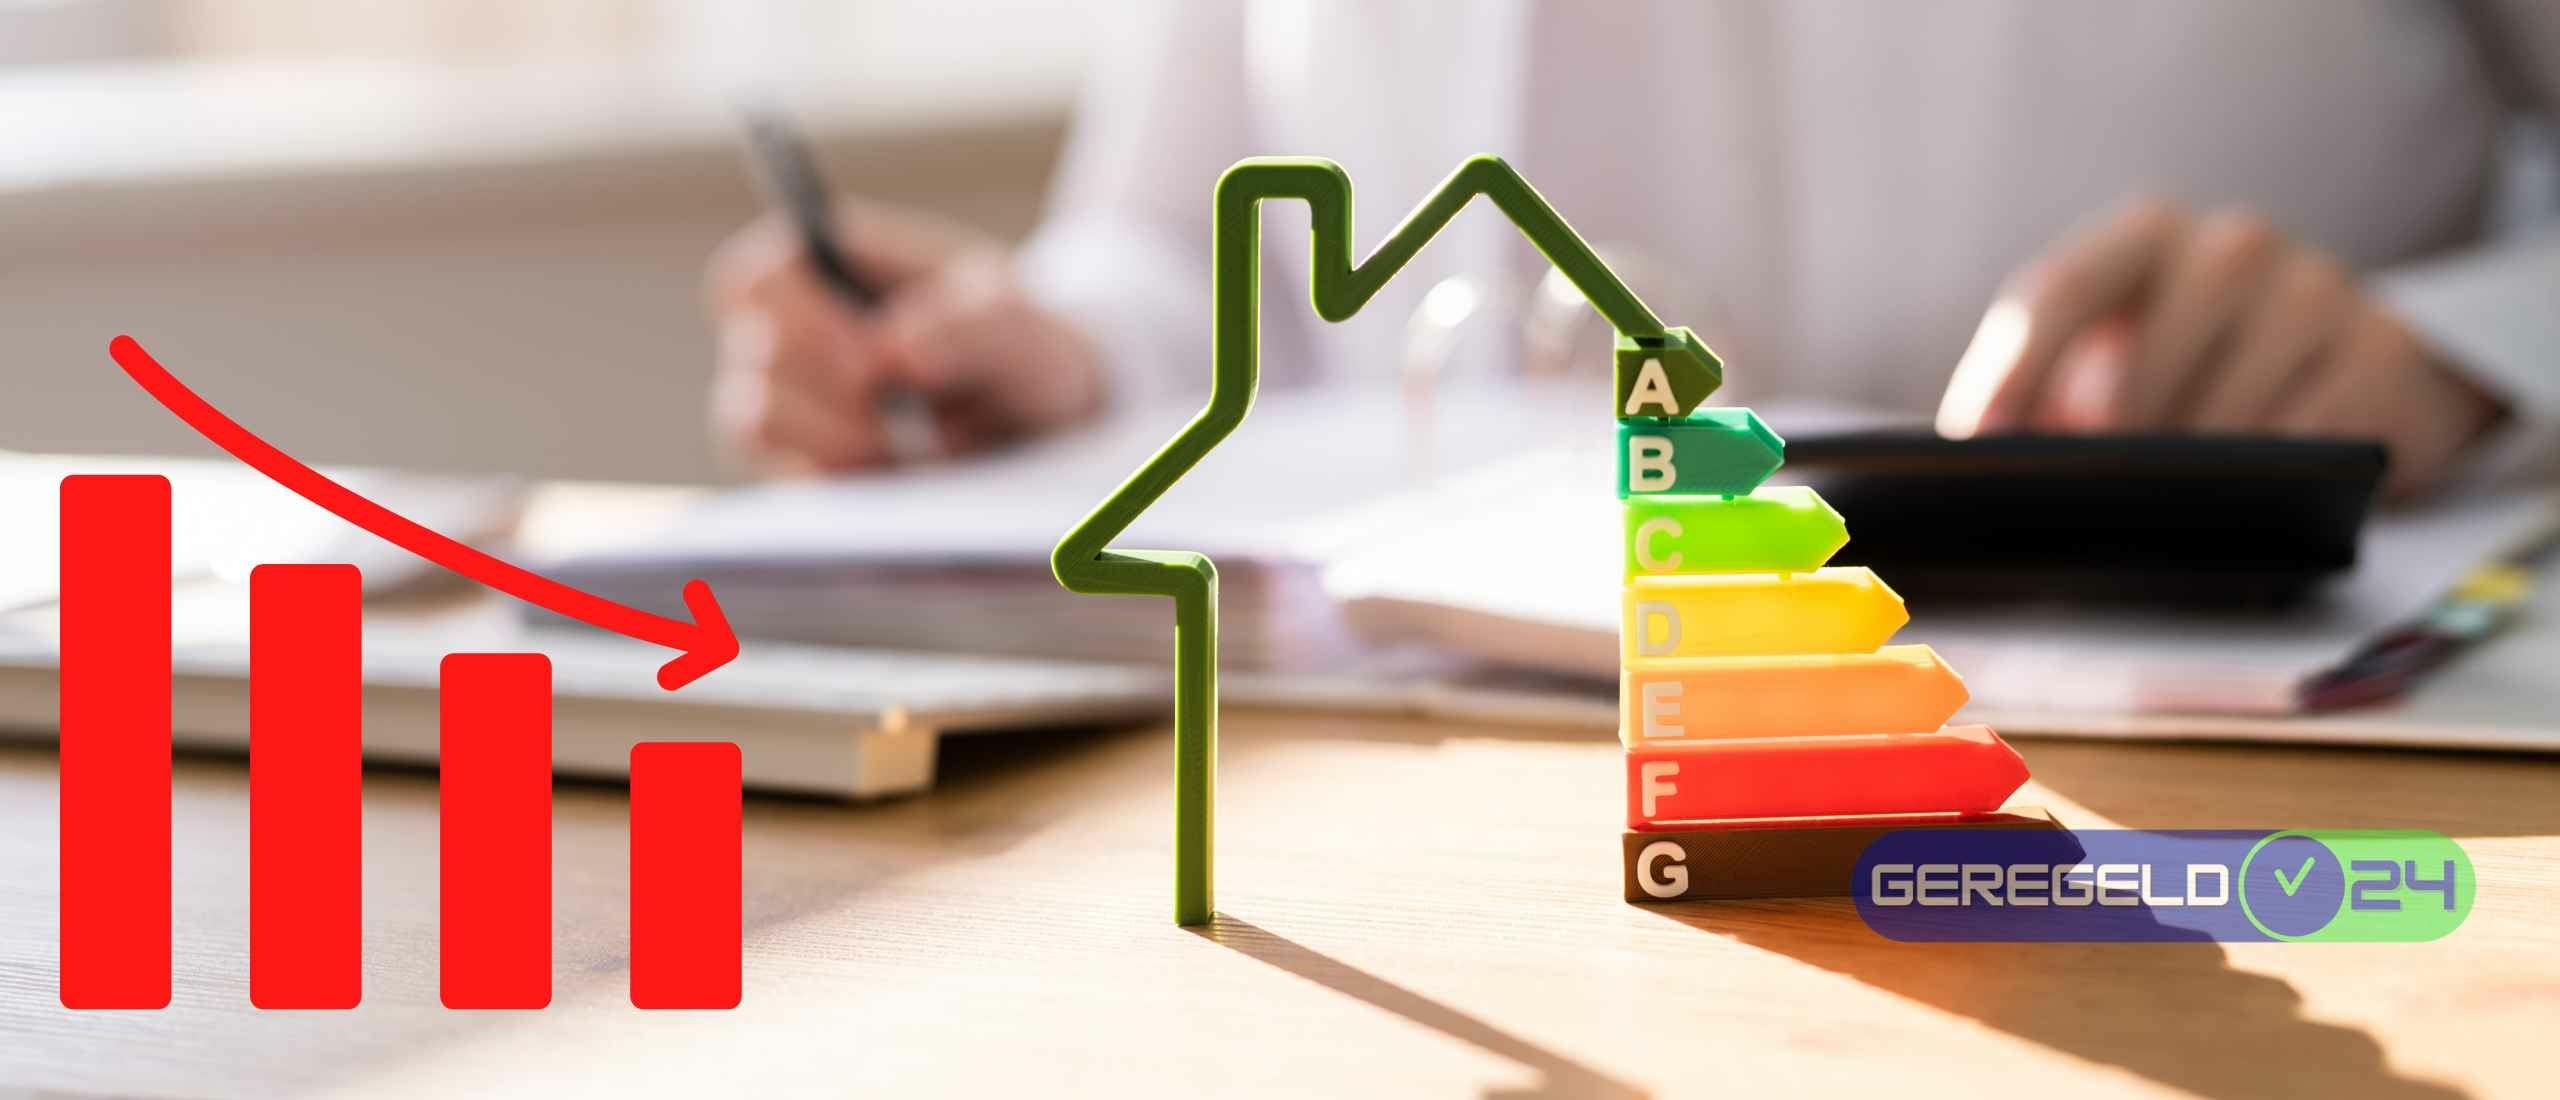 Huizen met slecht energielabel leveren veel minder op!